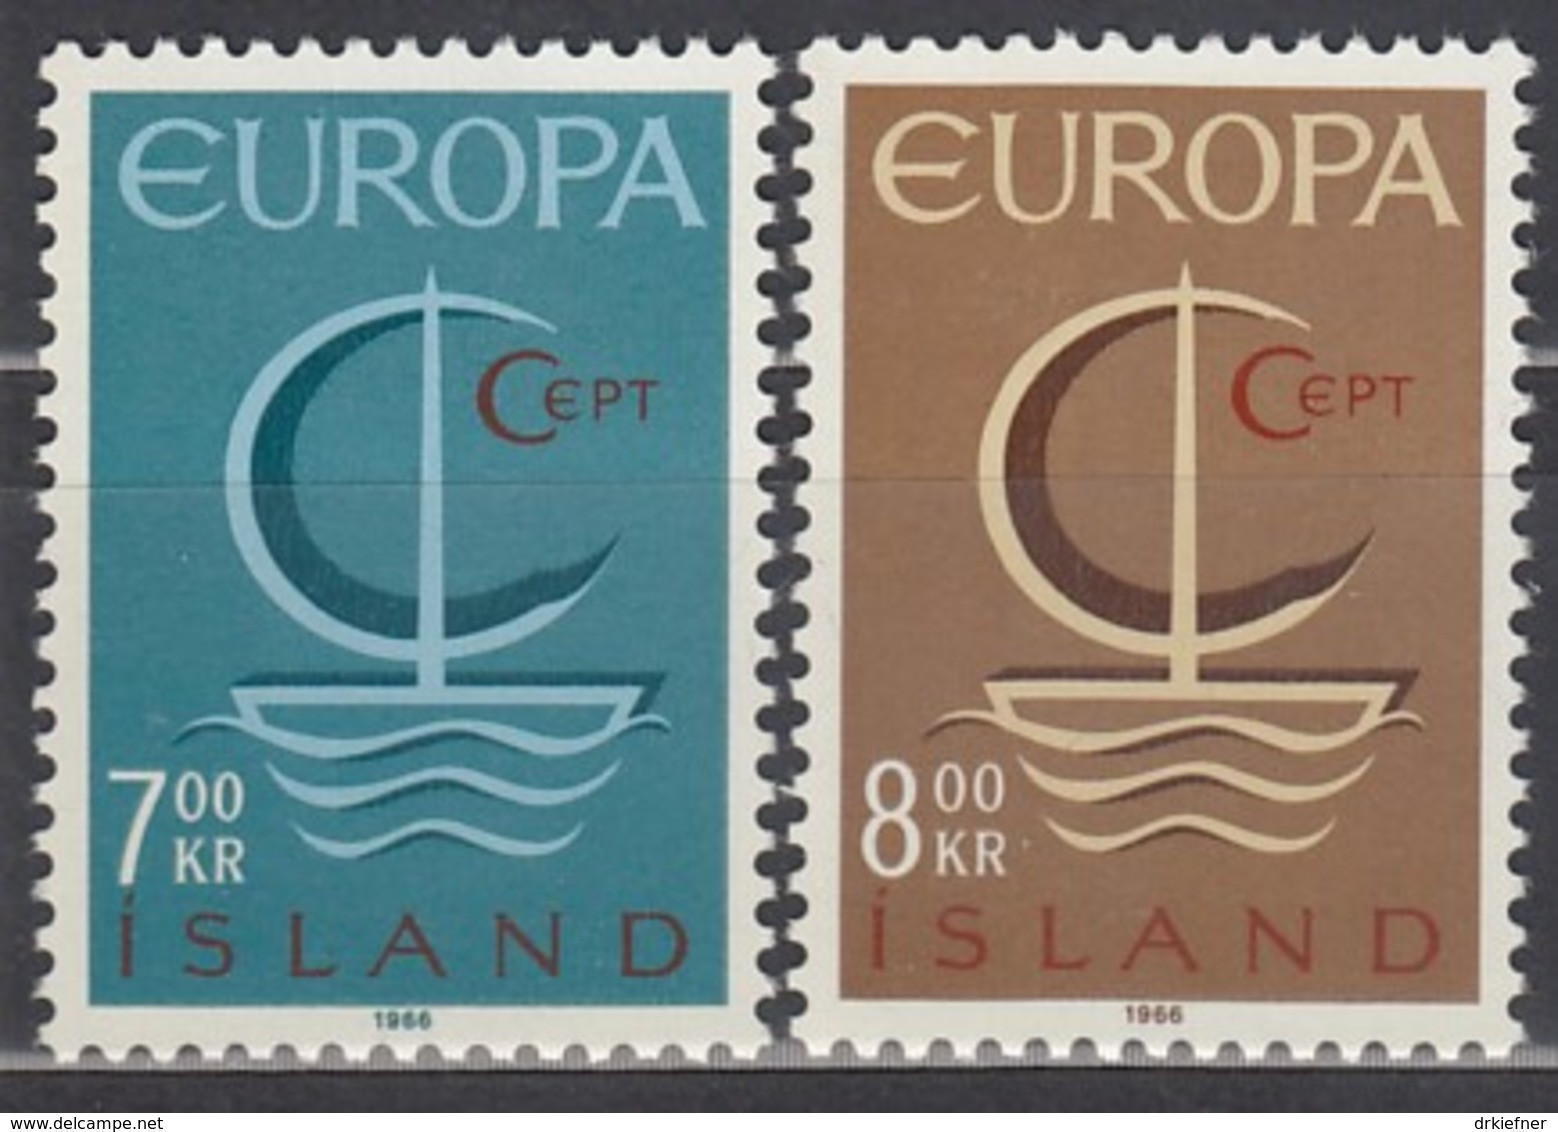 ISLAND  404-405, Postfrisch **, Europa CEPT 1966 - Nuovi